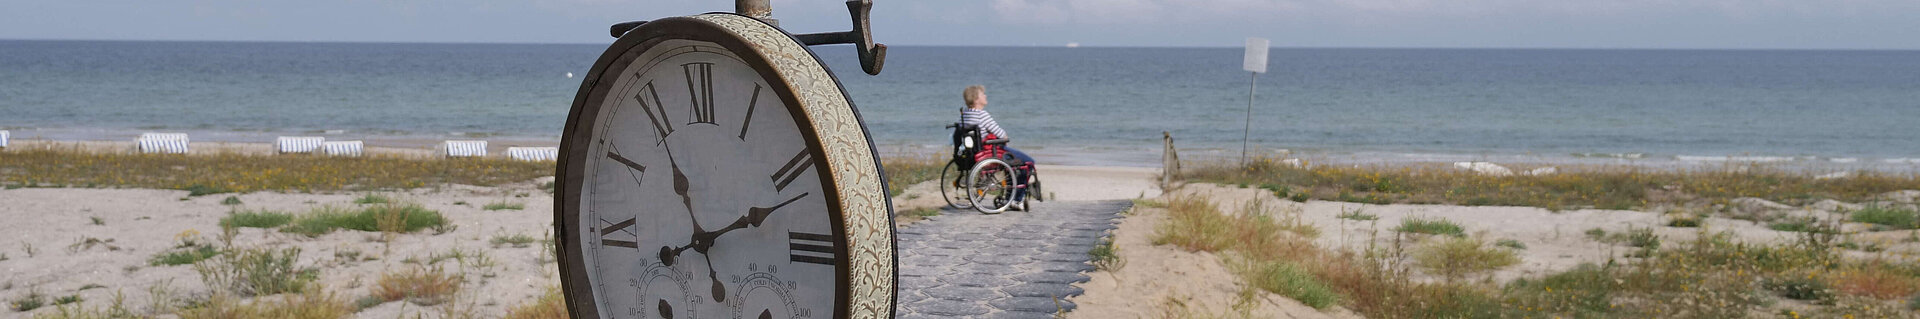 Ein Weg führt durch die Dünen zum Strand. Vorn am Weg eine Uhr. Am Ende des Weges, nahe am Wasser, eine Person im Rollstuhl.